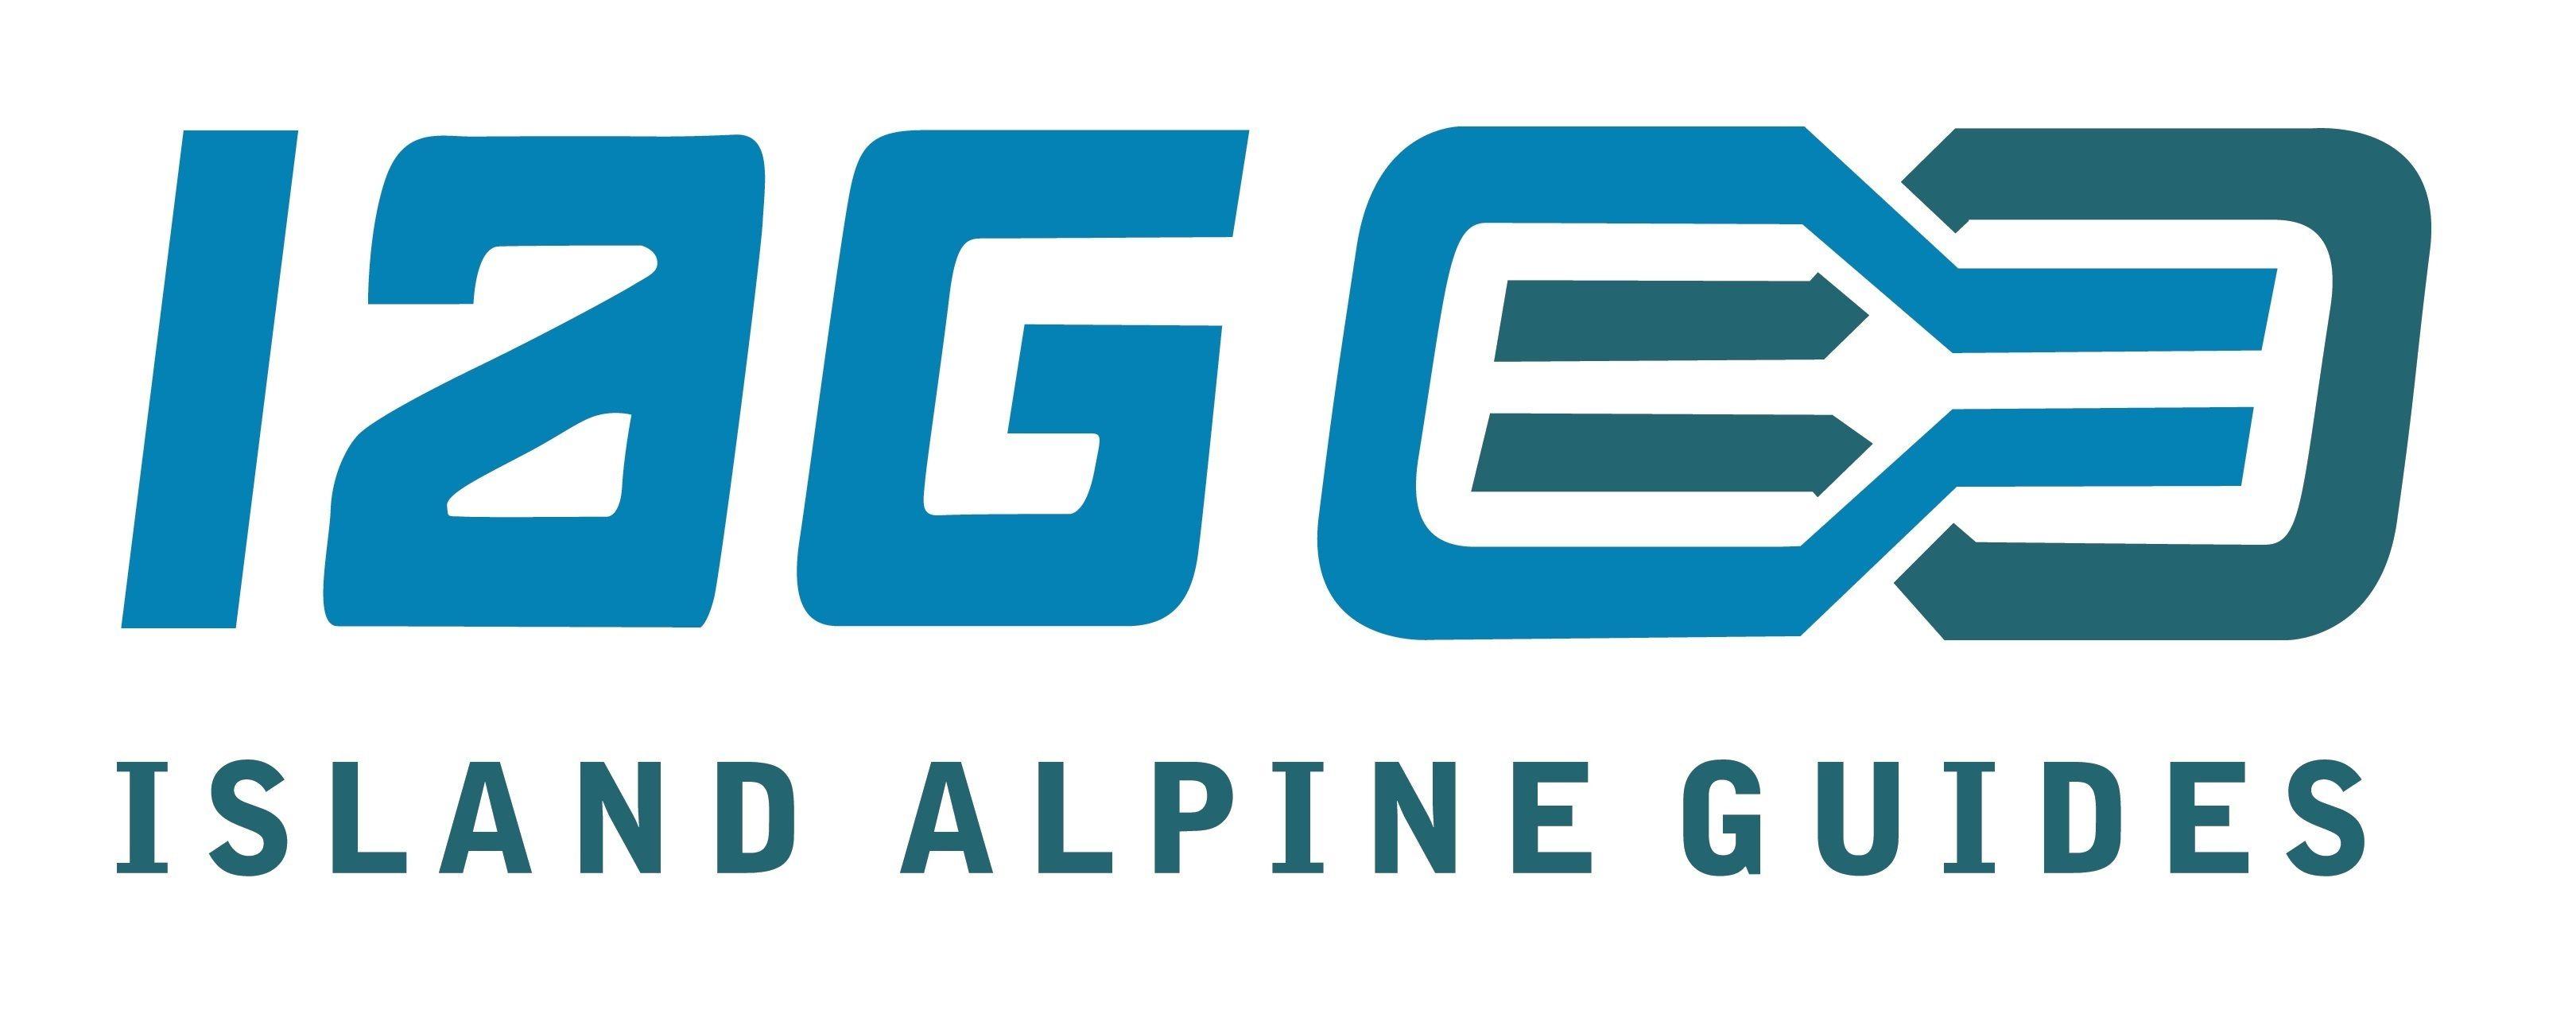 IAG Logo - IAG logo